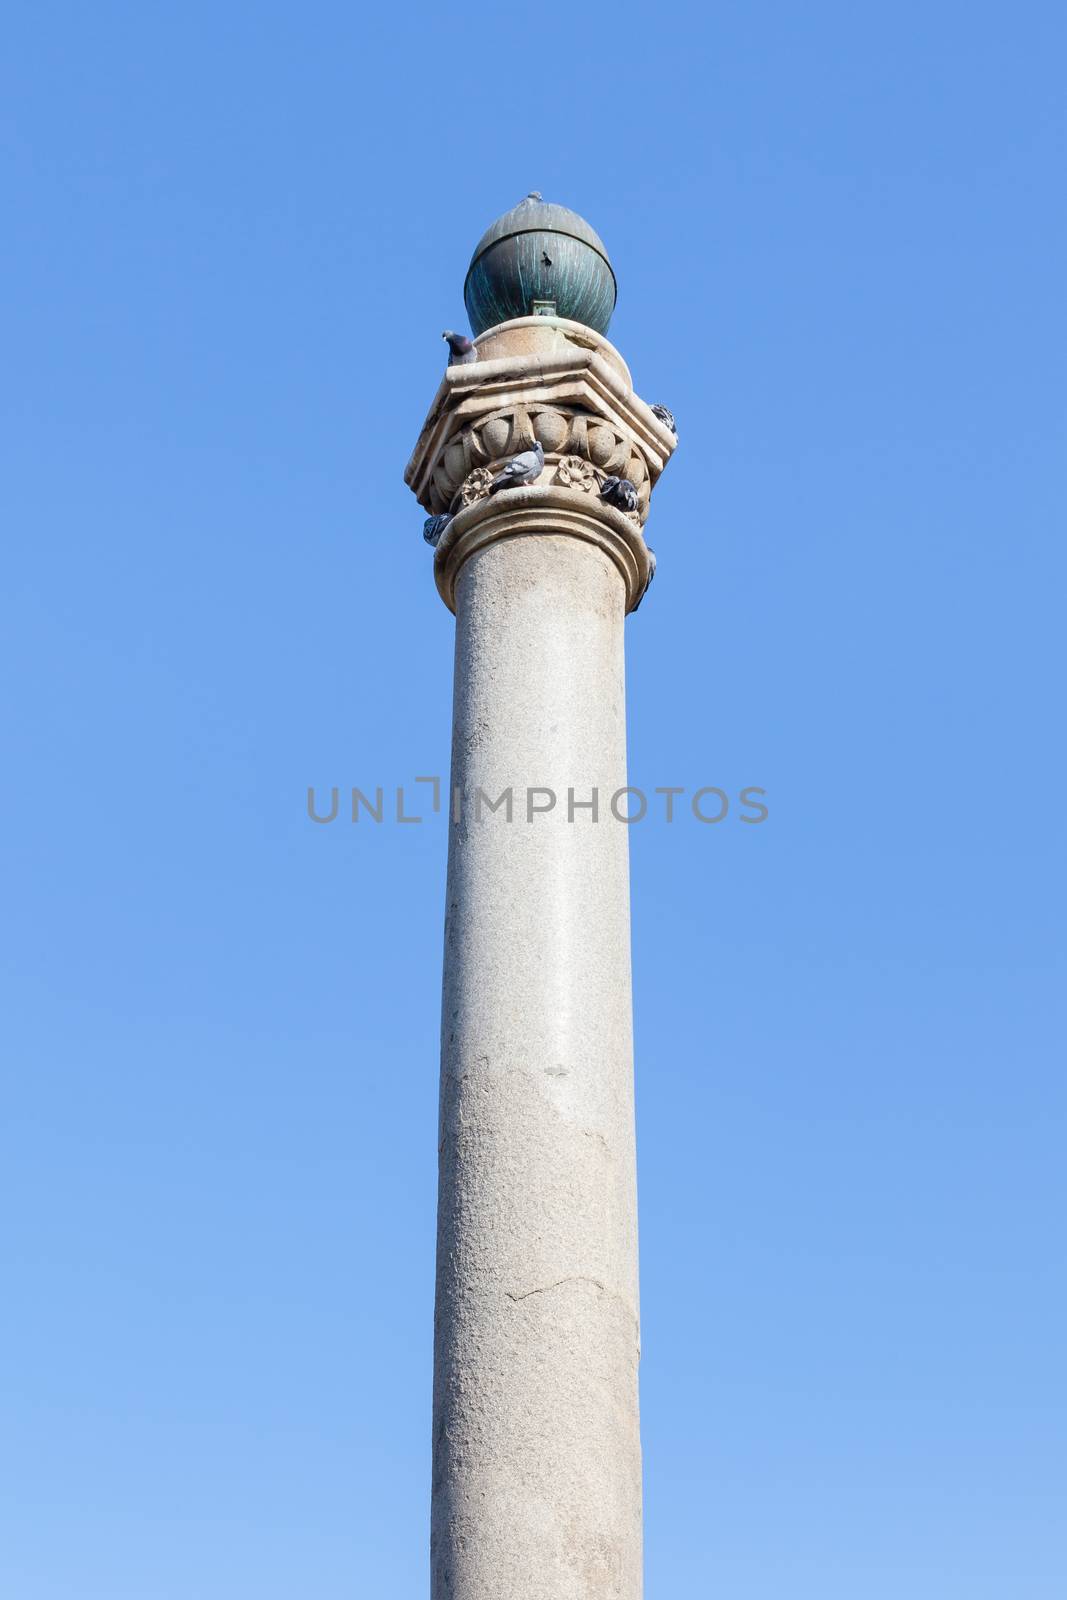 The Venetian Column is in Sarayonu Square (Ataturk Square) in Nicosia in the Turkish Republic of Northern Cyprus.